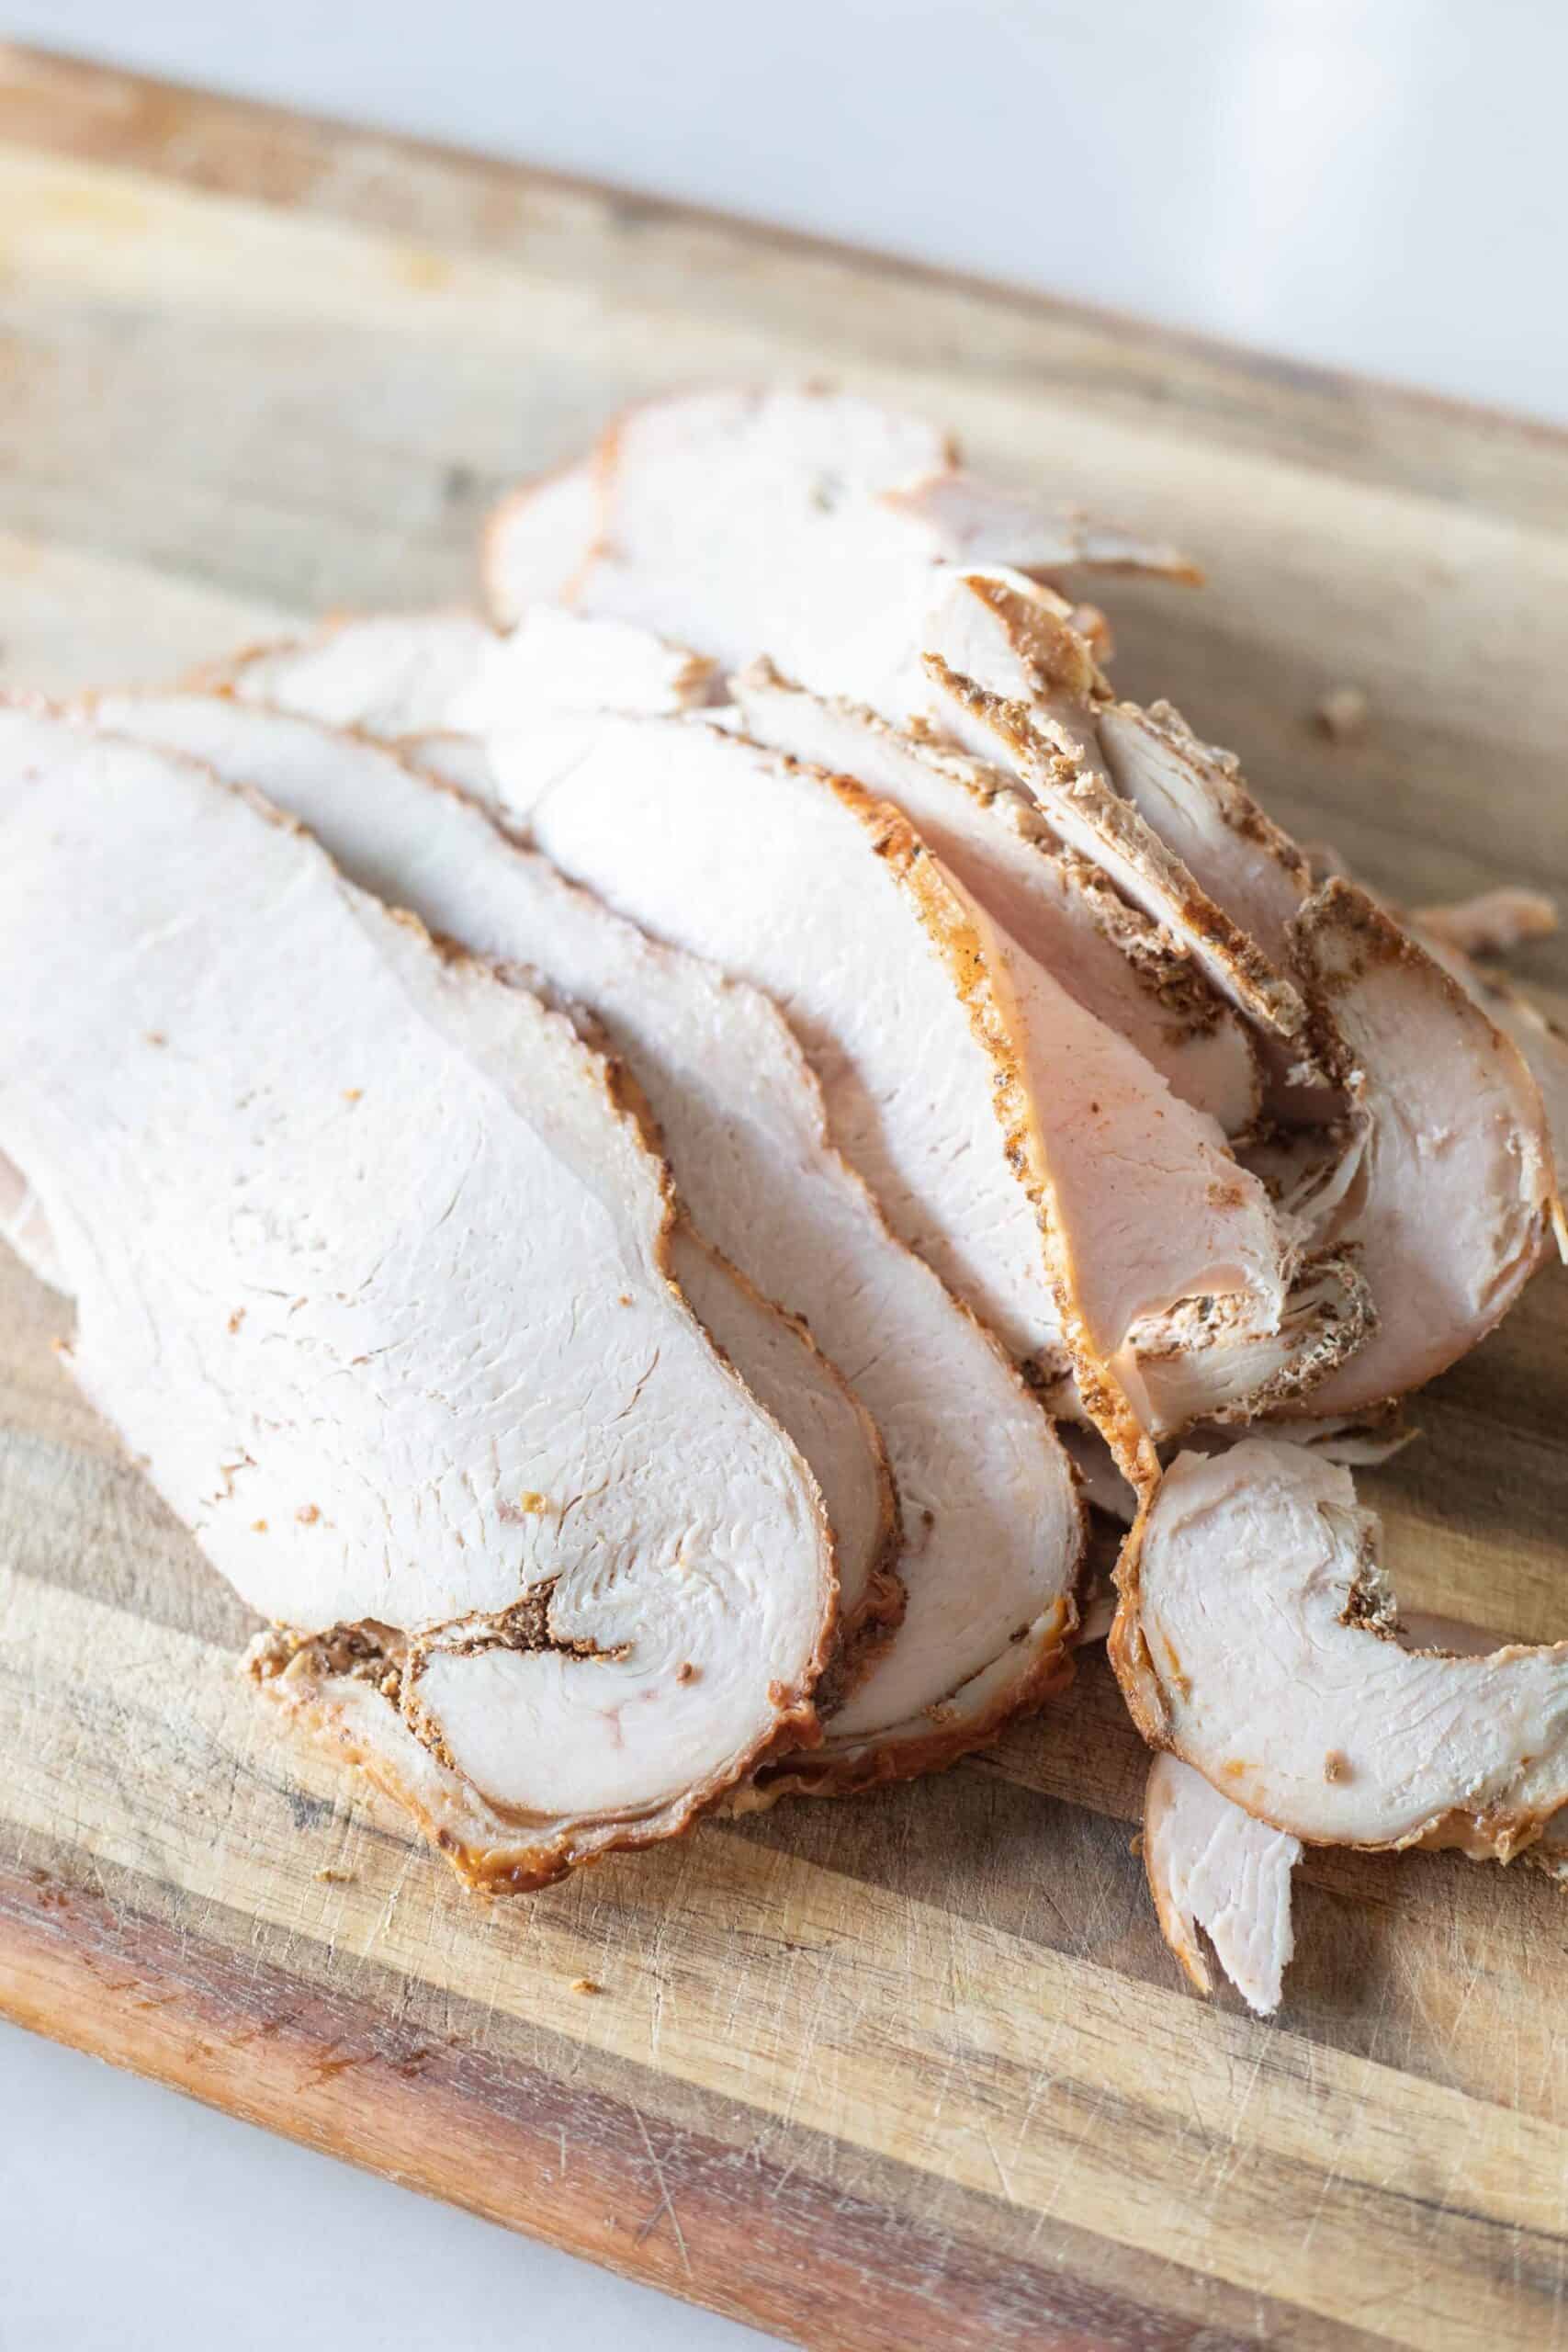 Sliced Turkey breast on a cutting board